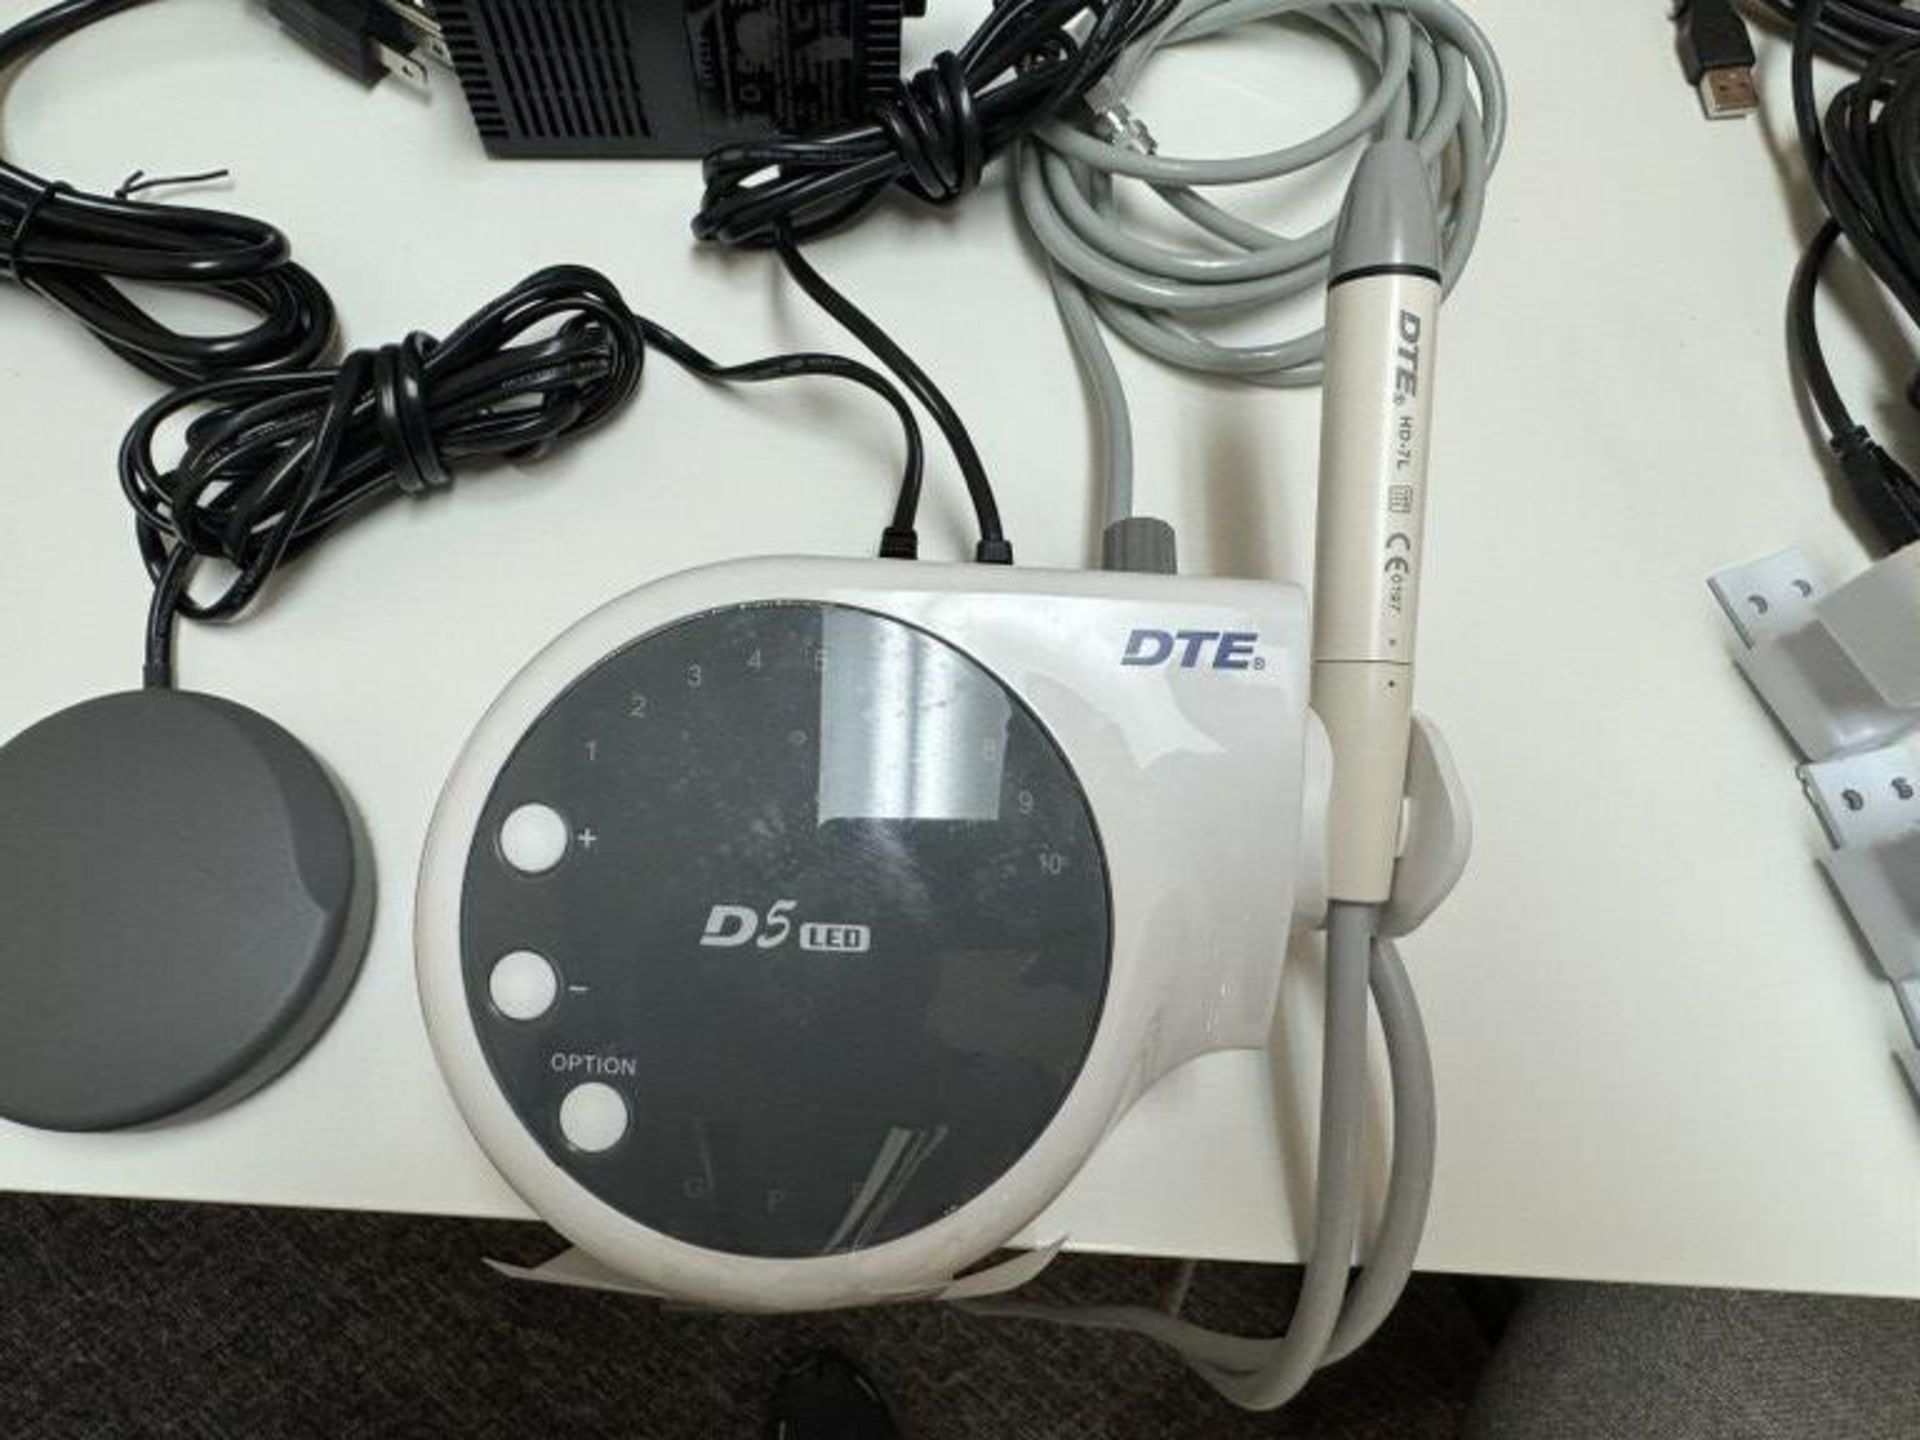 DTE ULTRASONIC SCALIER, MODEL: D5 LED SYSTEM - Bild 2 aus 3